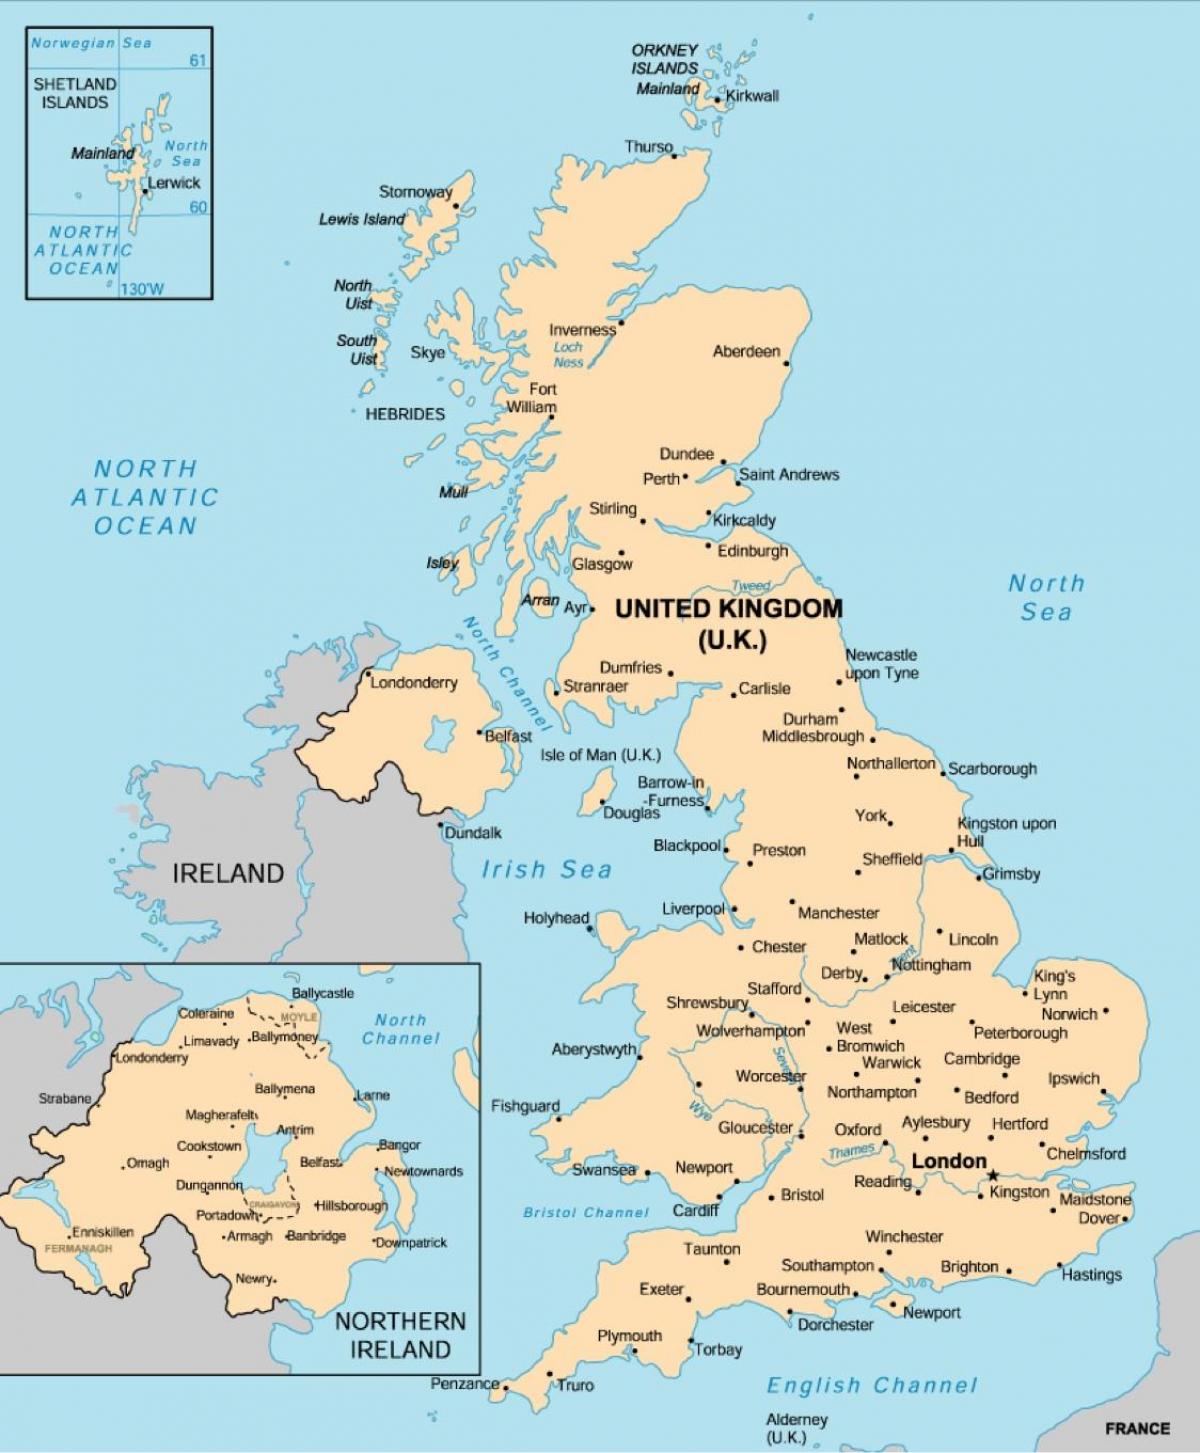 Mapa do Reino Unido (UK) com as principais cidades